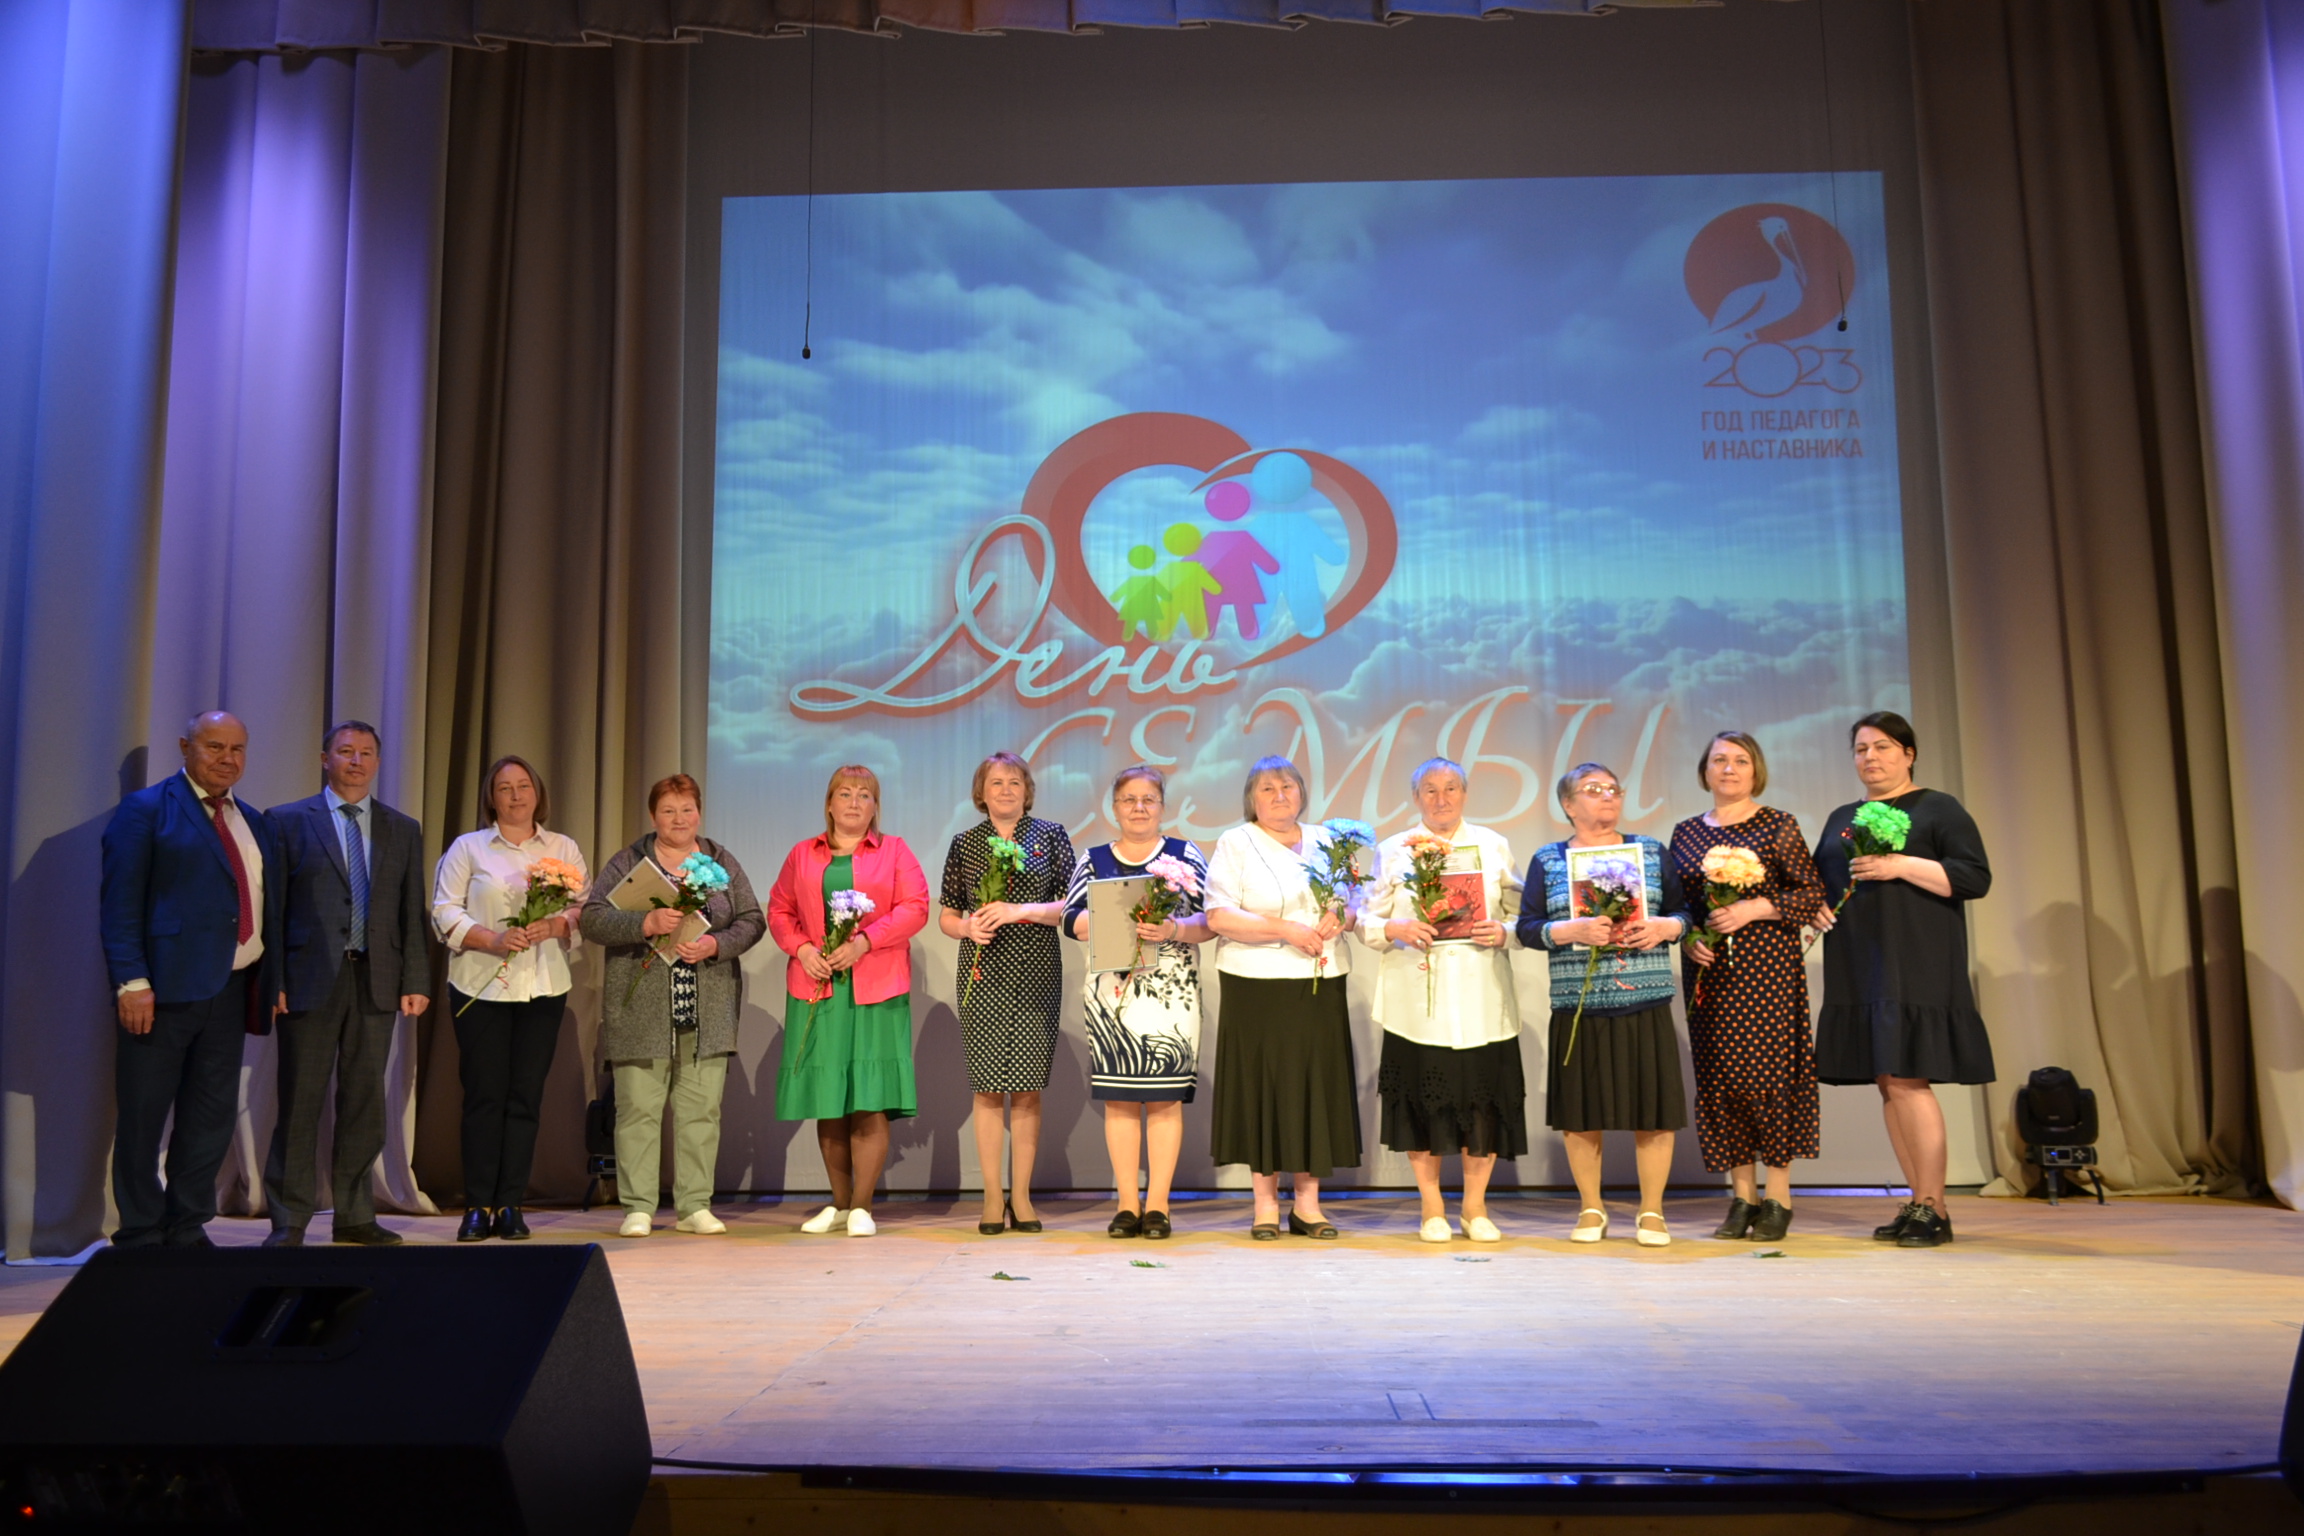 Сегодня в МКДЦ пгт Афанасьево состоялось торжественное мероприятие «Её Величество Семья»